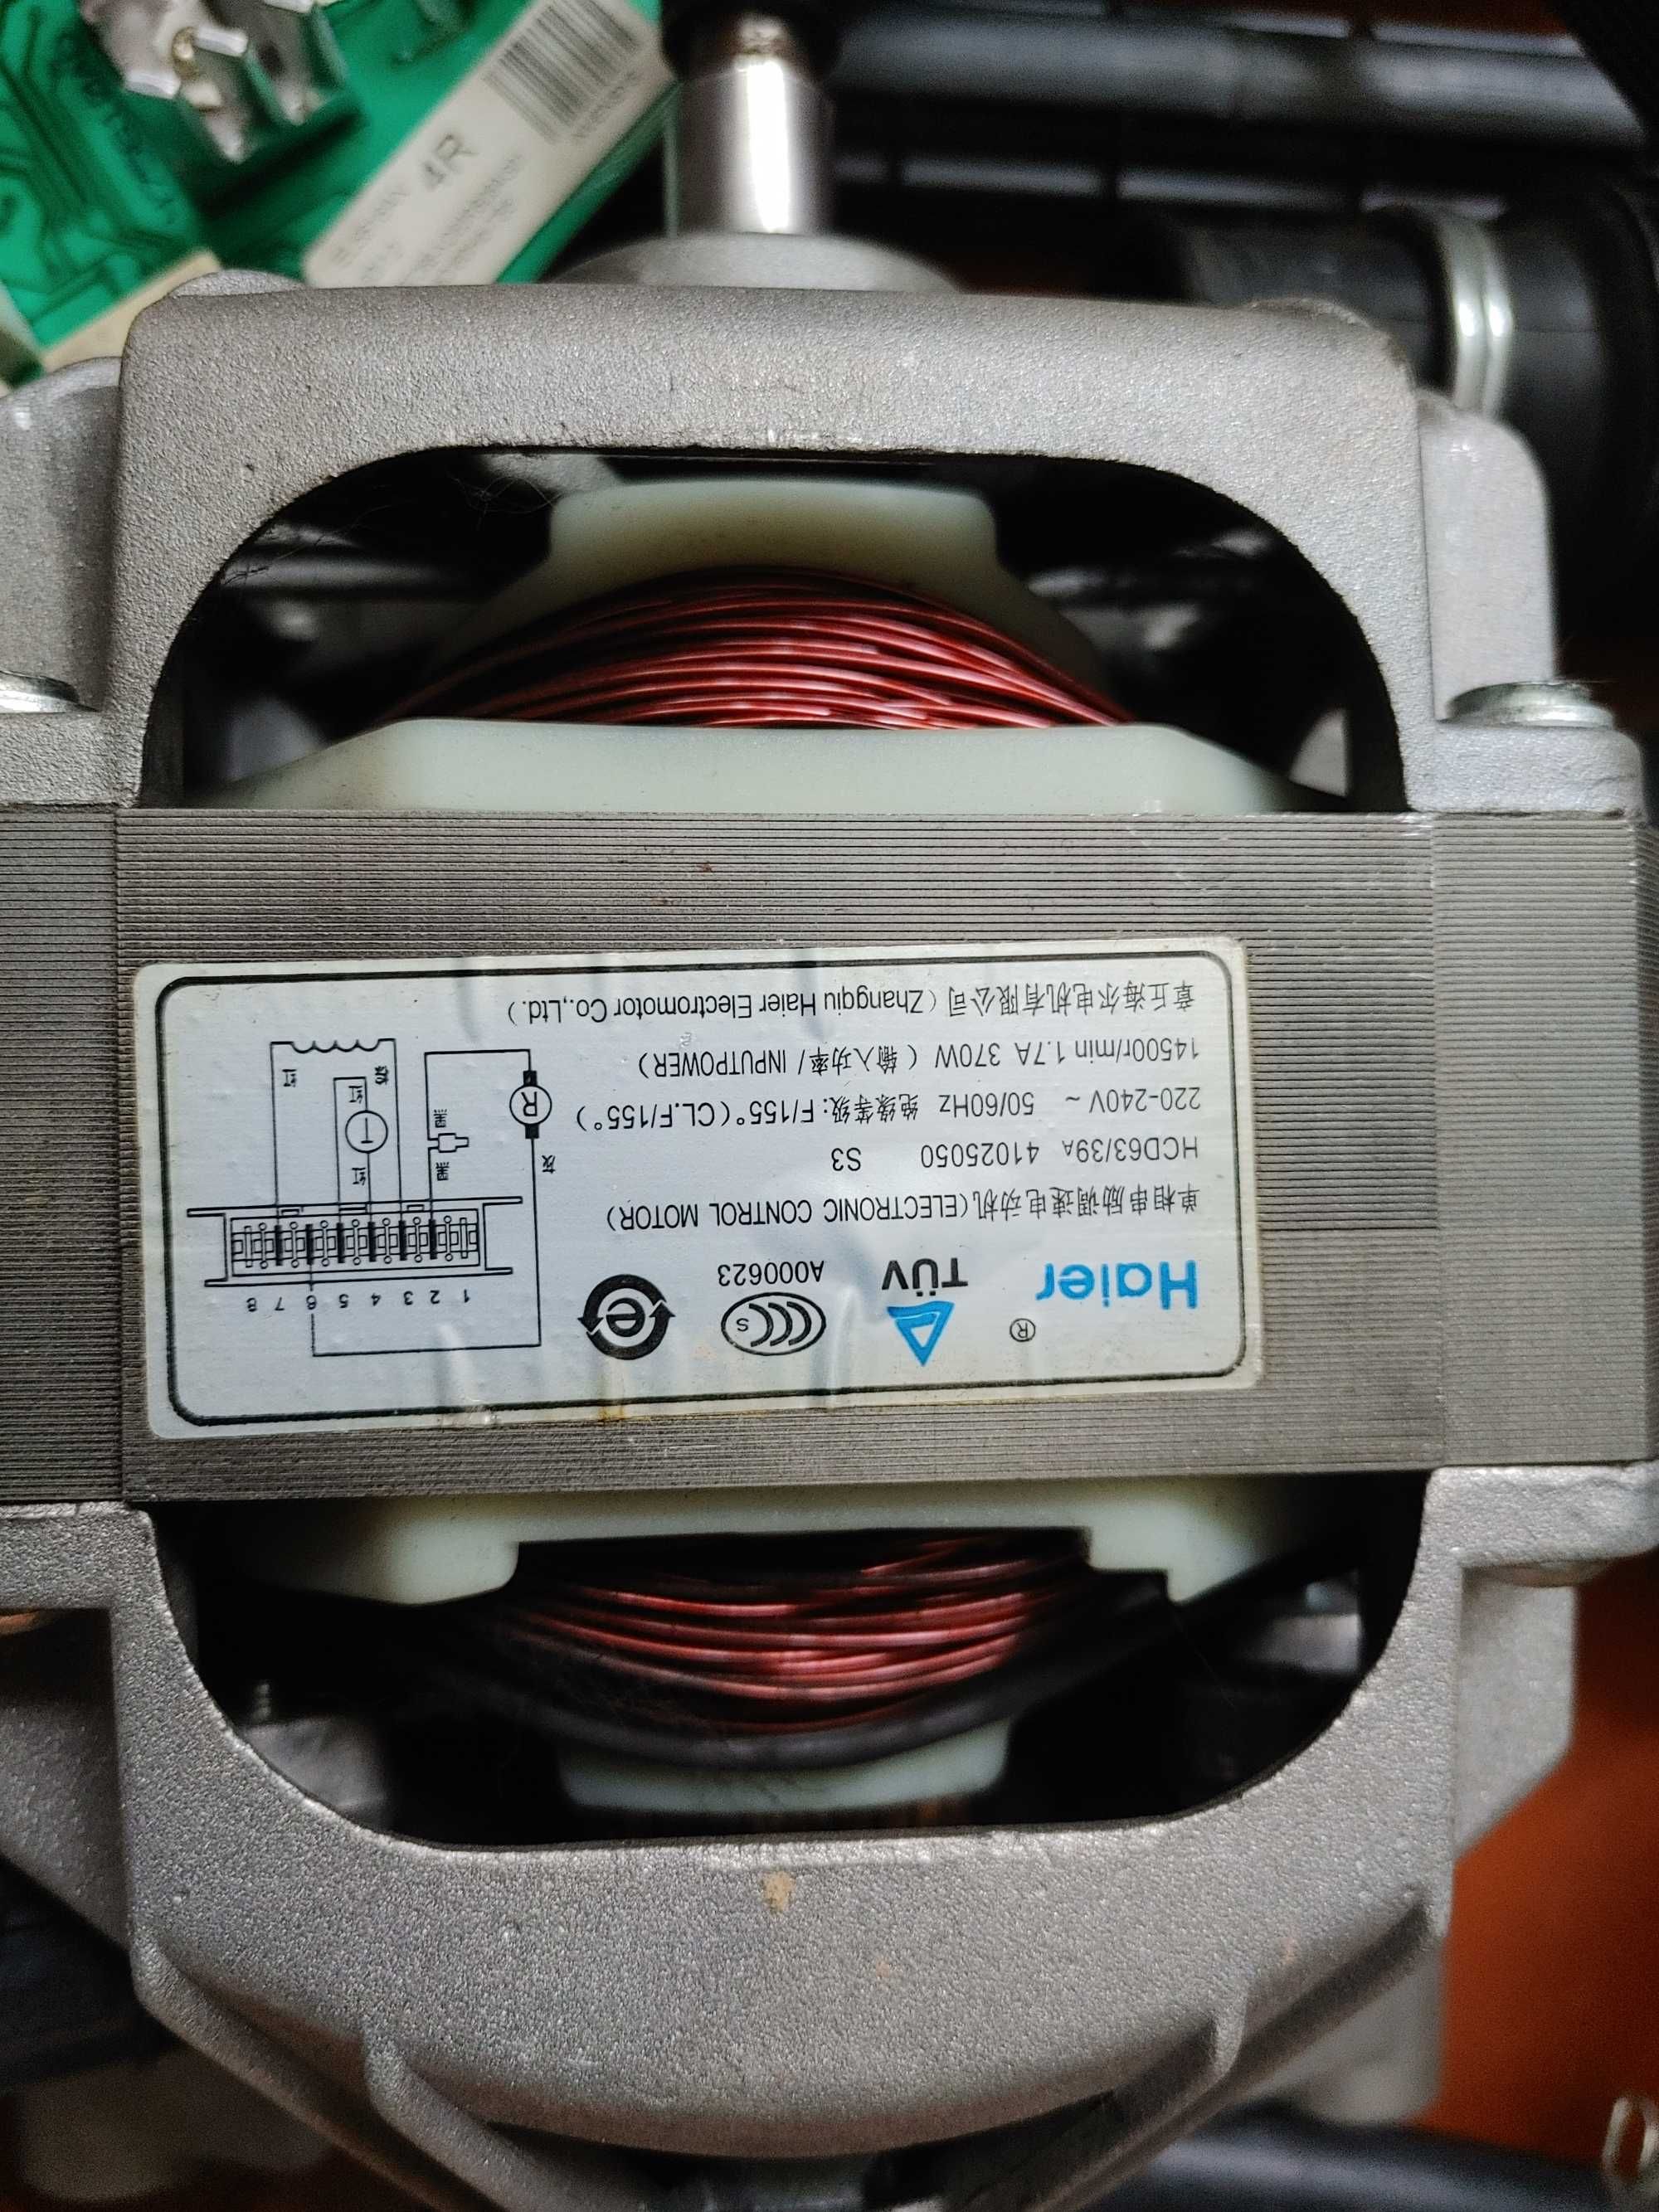 Електромотор до пральної машини Candy CO 106 F. Є і запчастини.